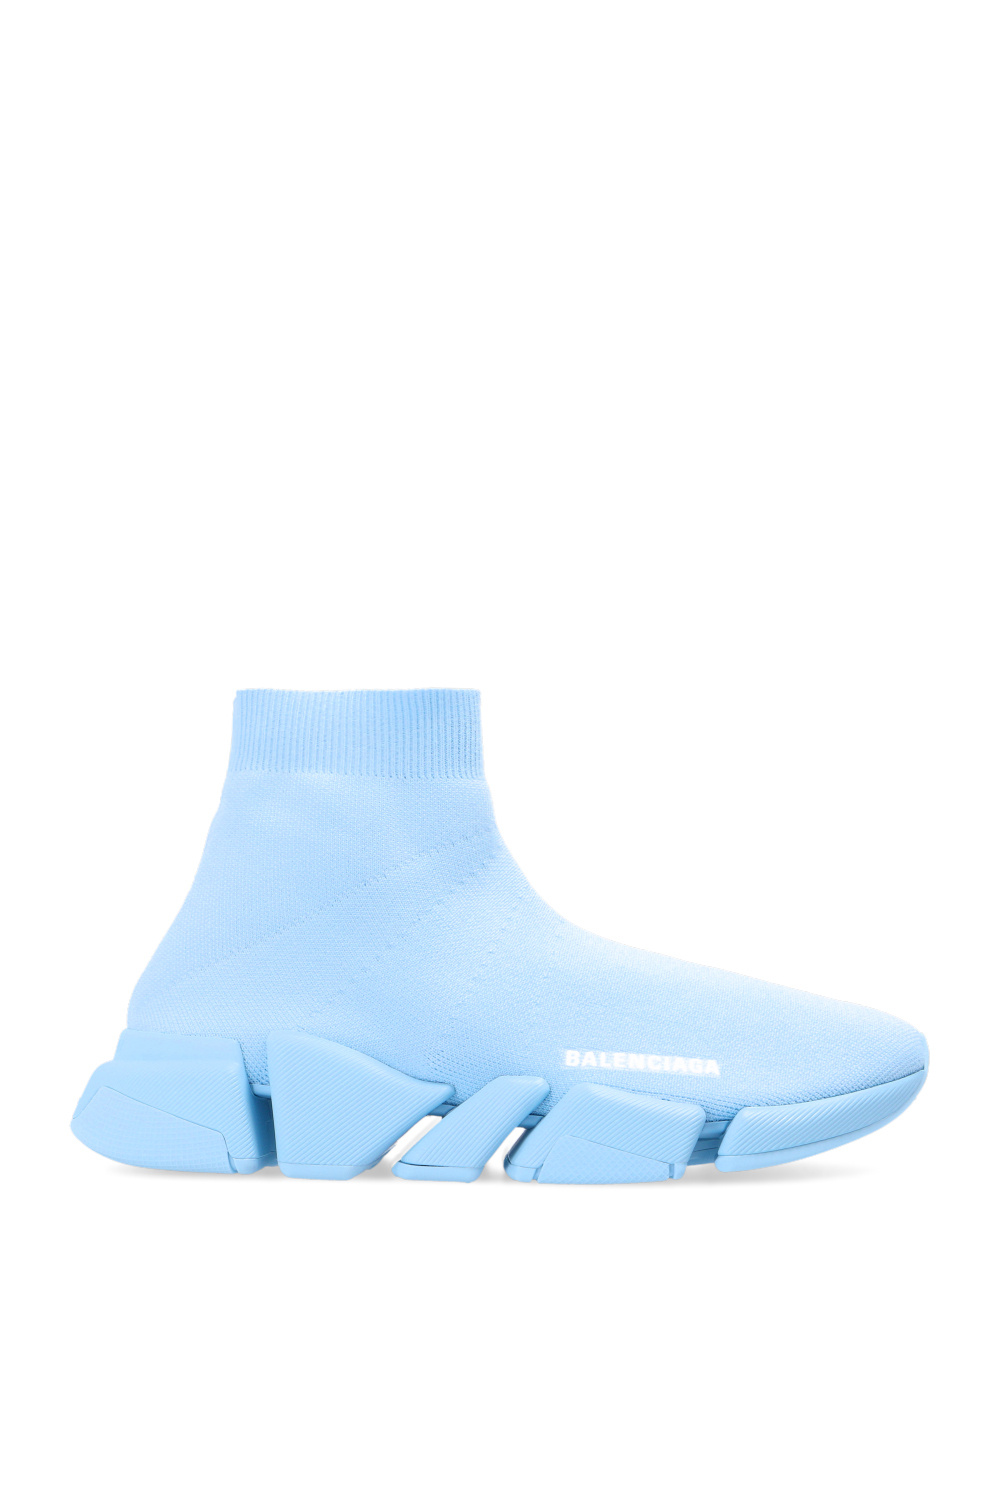 lærer industri Squeak Speed 2.0 LT' sock sneakers Balenciaga - Sos-togoShops Canada